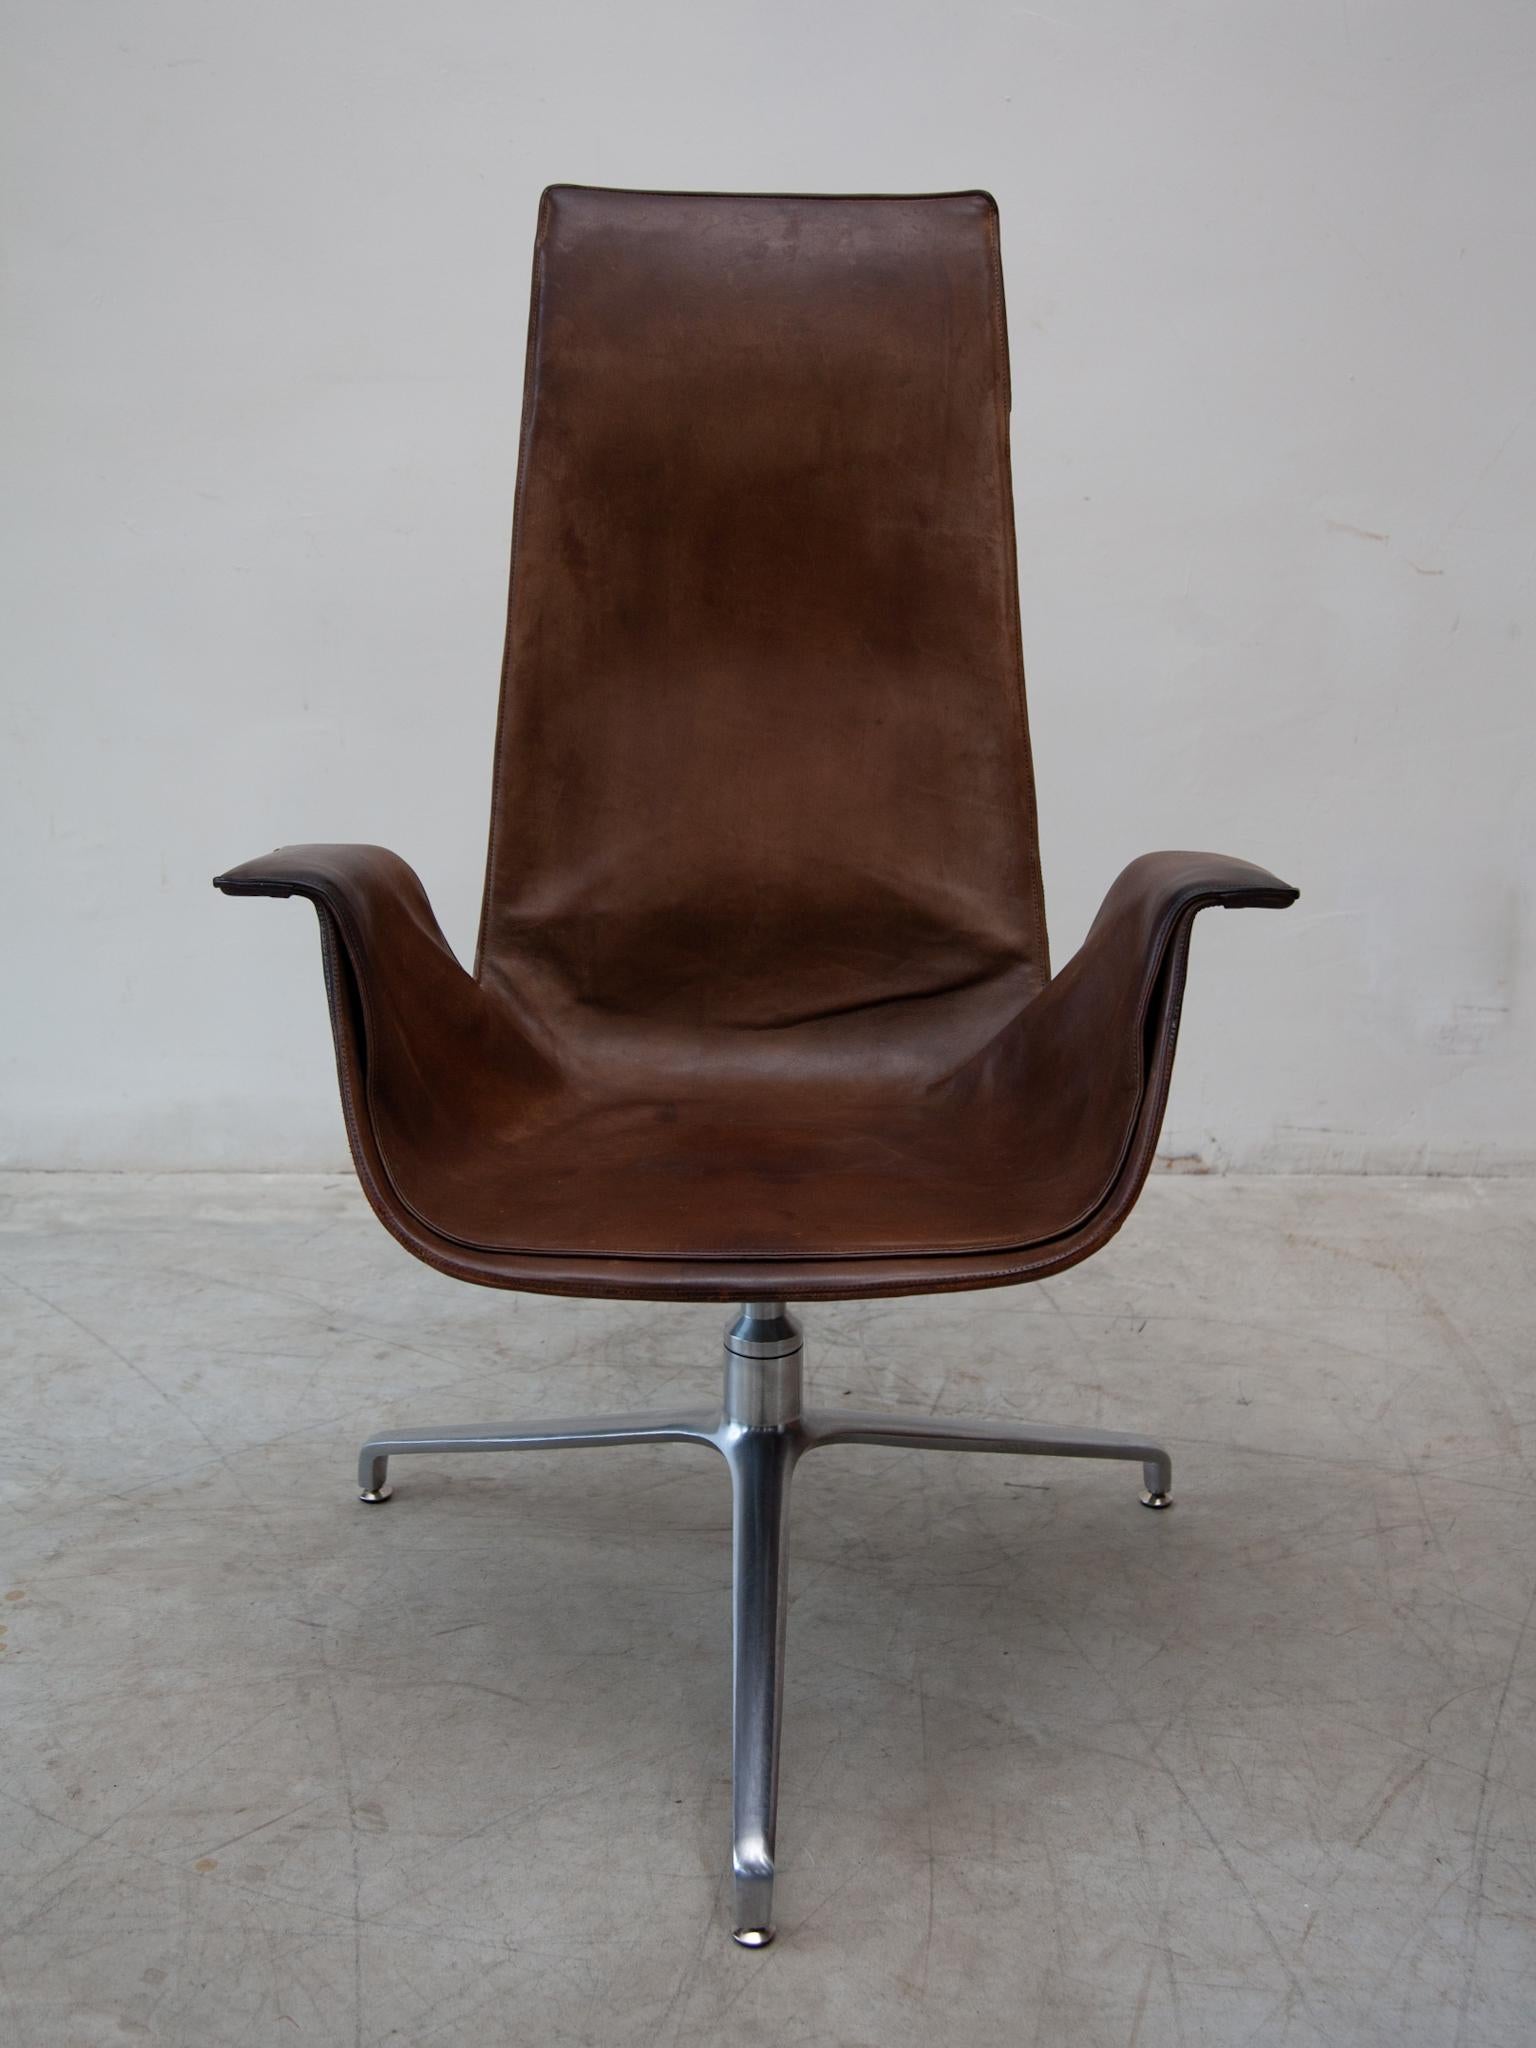 Eine zeitlose Skulptur der Moderne, schokoladenbraunes Leder schönen FK 6725 Lounge-Sessel im Jahr 1964 entworfen, erhielt das Modell einen Bundespreis für gute Form. Als Meeting-Loungesessel, entworfen von Preben Fabricius und Jörgen Kastholm,